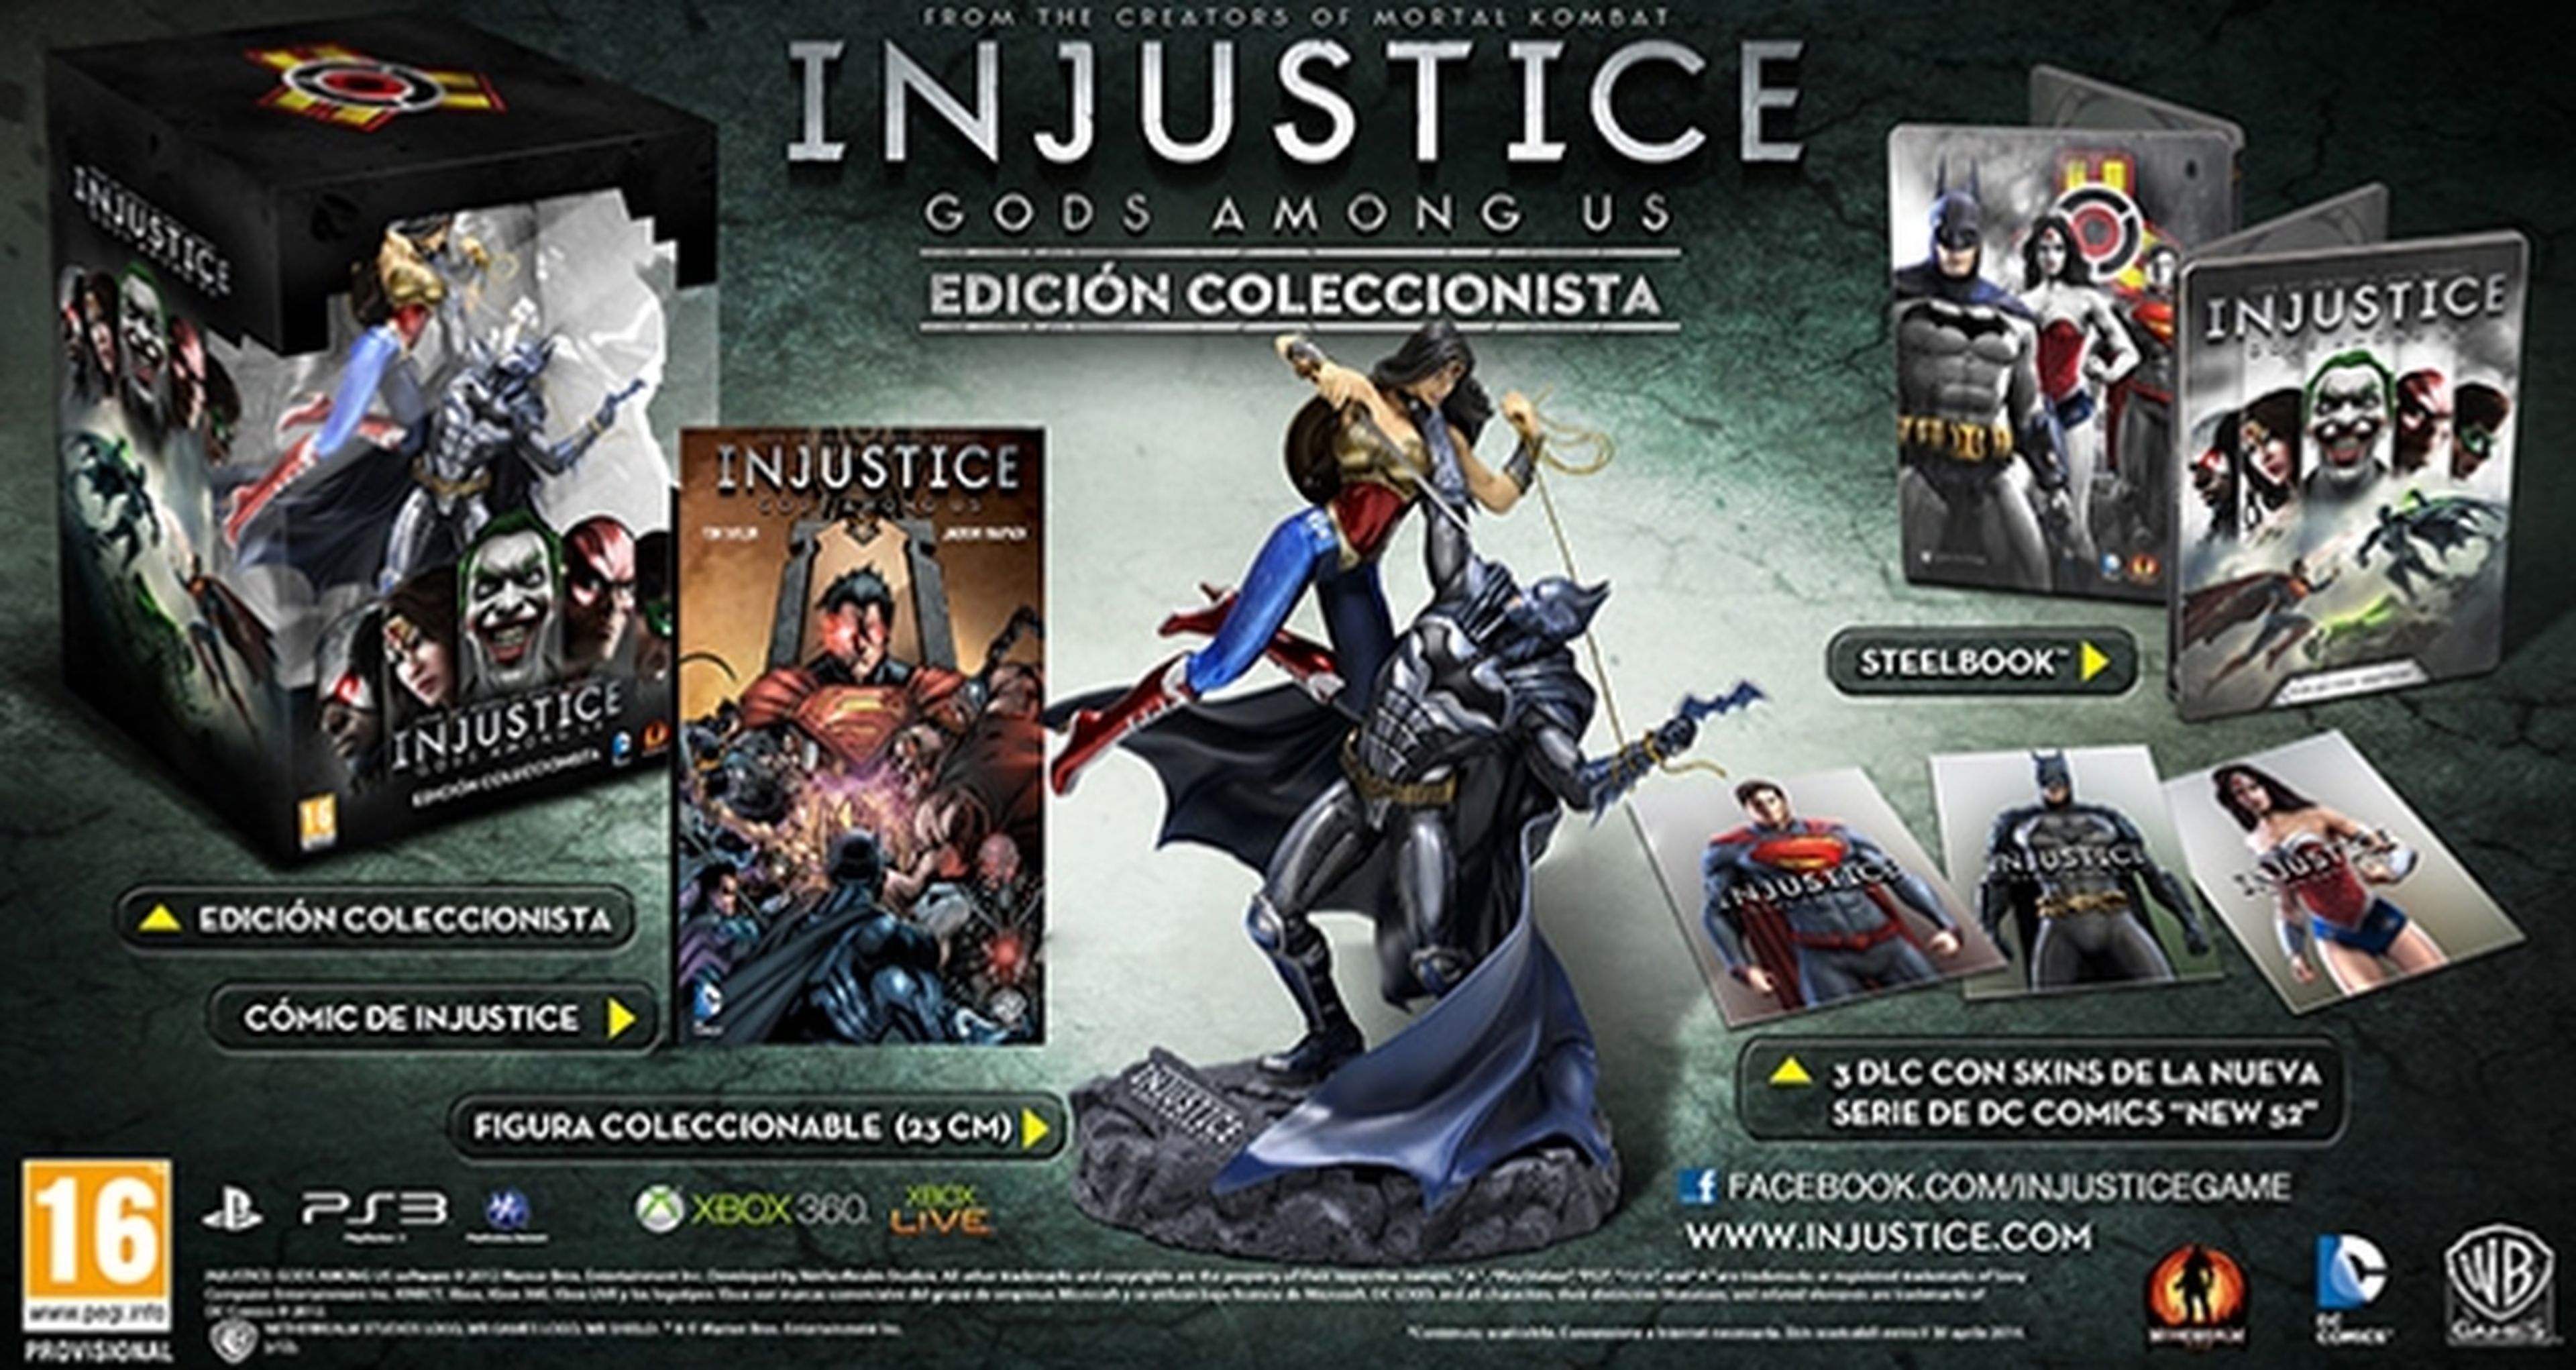 Injustice Gods Among Us y su edición coleccionista